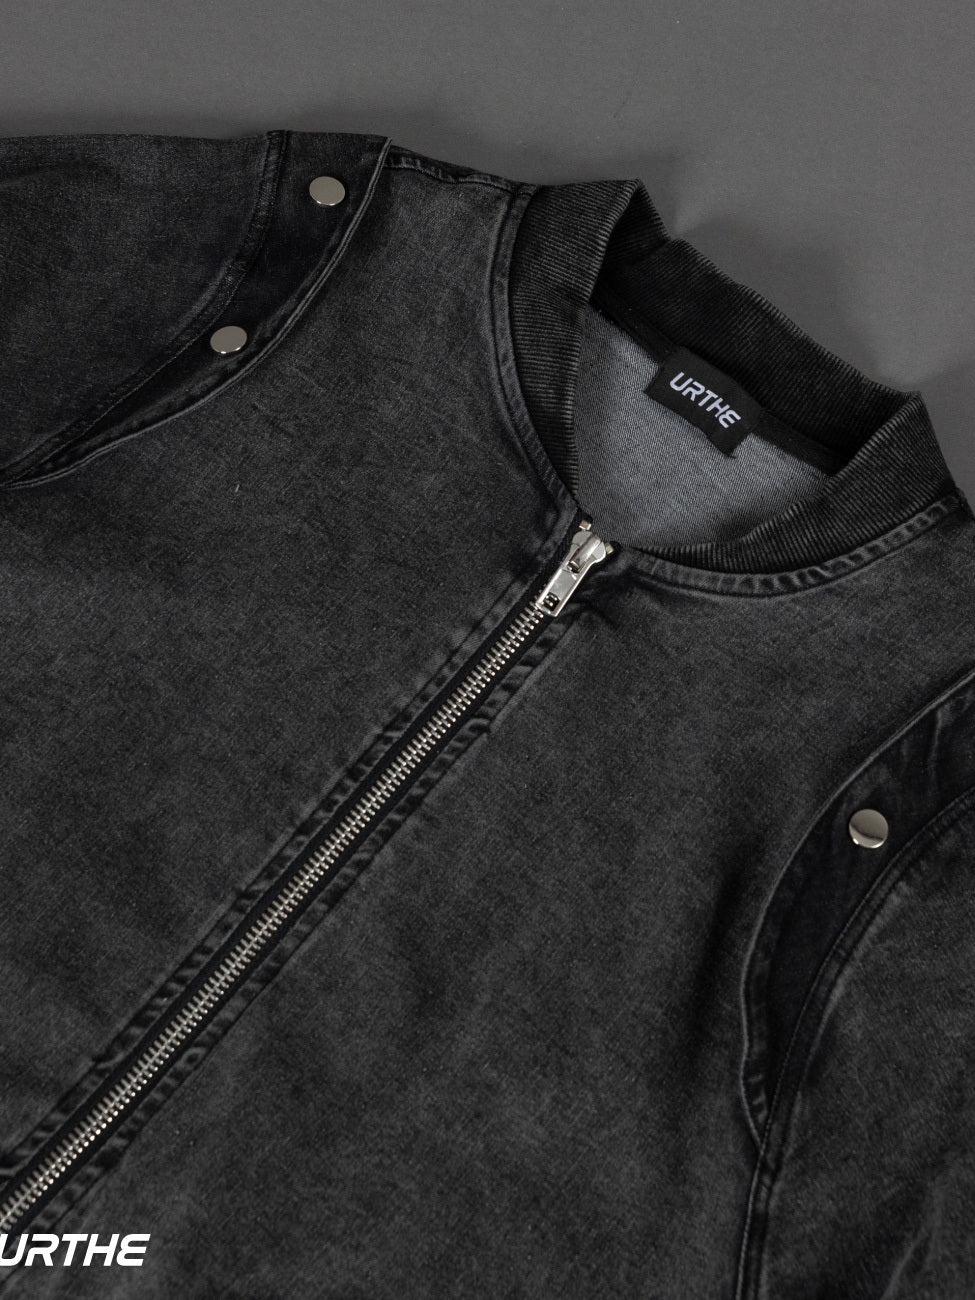 URTHE - เสื้อแจ็คเก็ตยีนส์ แขนยาว ผ้าฟอก รุ่น DENIM JK 2.0